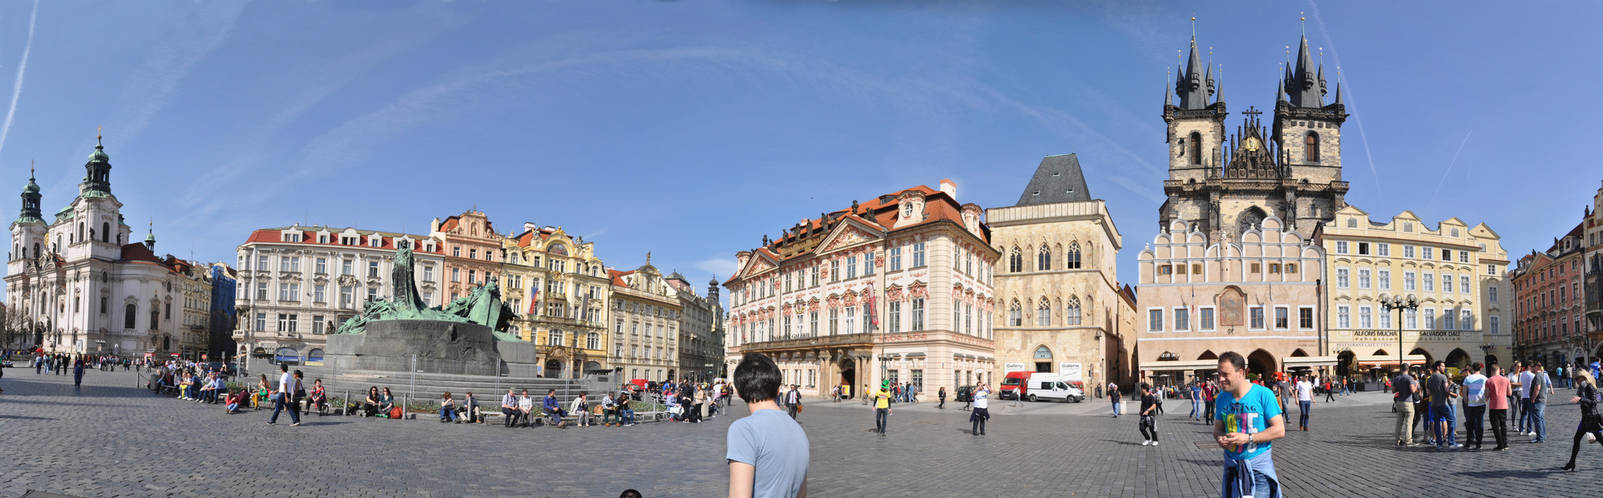 Old Town Square Panorama Prague